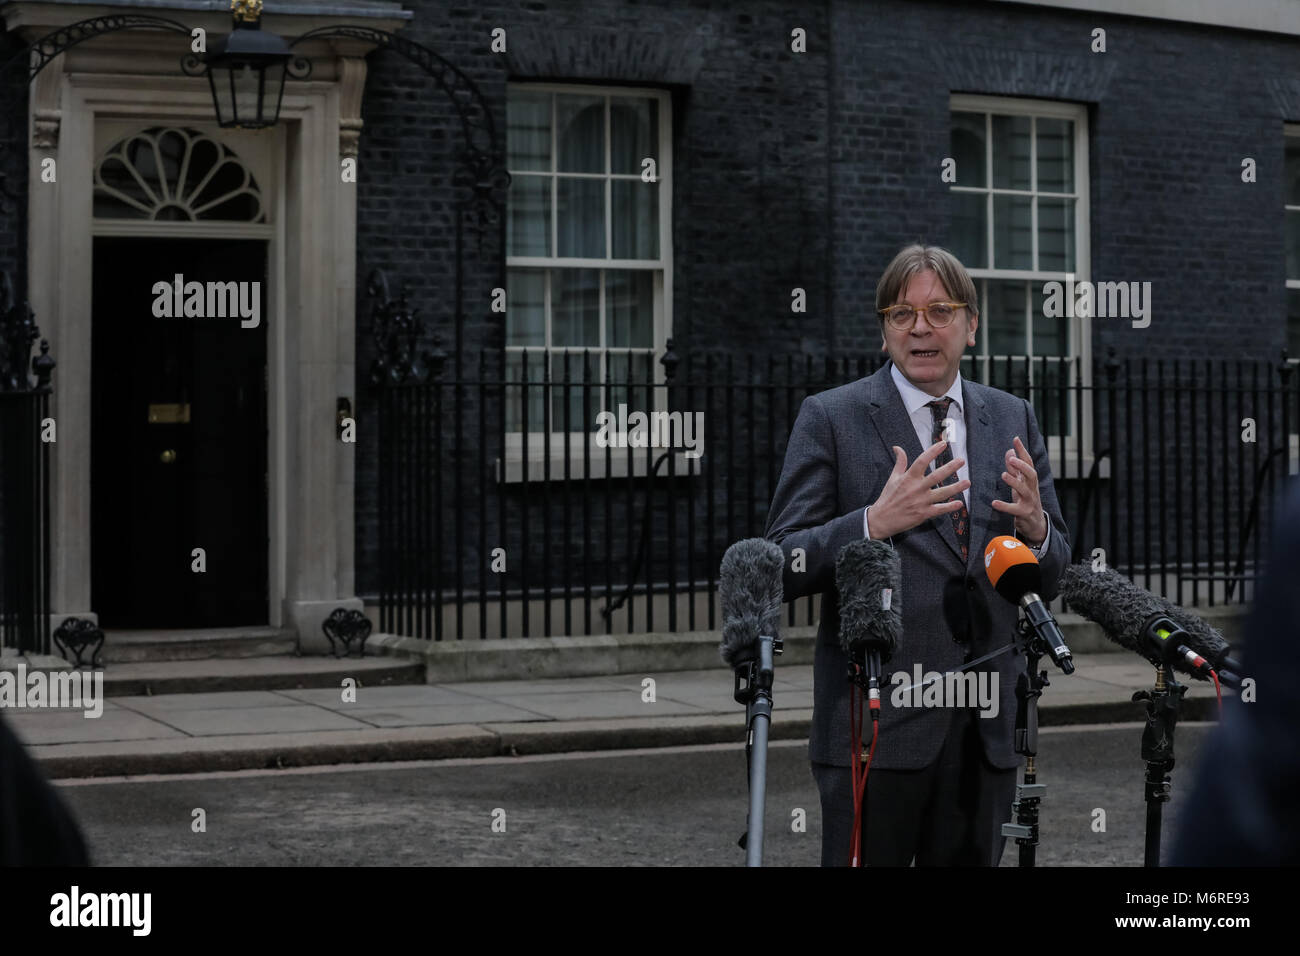 Guy Verhofstadt, le Parlement européen a Brexit coordonnateur, répond aux questions des médias britanniques à propos de sa rencontre avec David Davis. 10 Downing Street, Londres, Royaume-Uni. 6 mars 2018 Banque D'Images